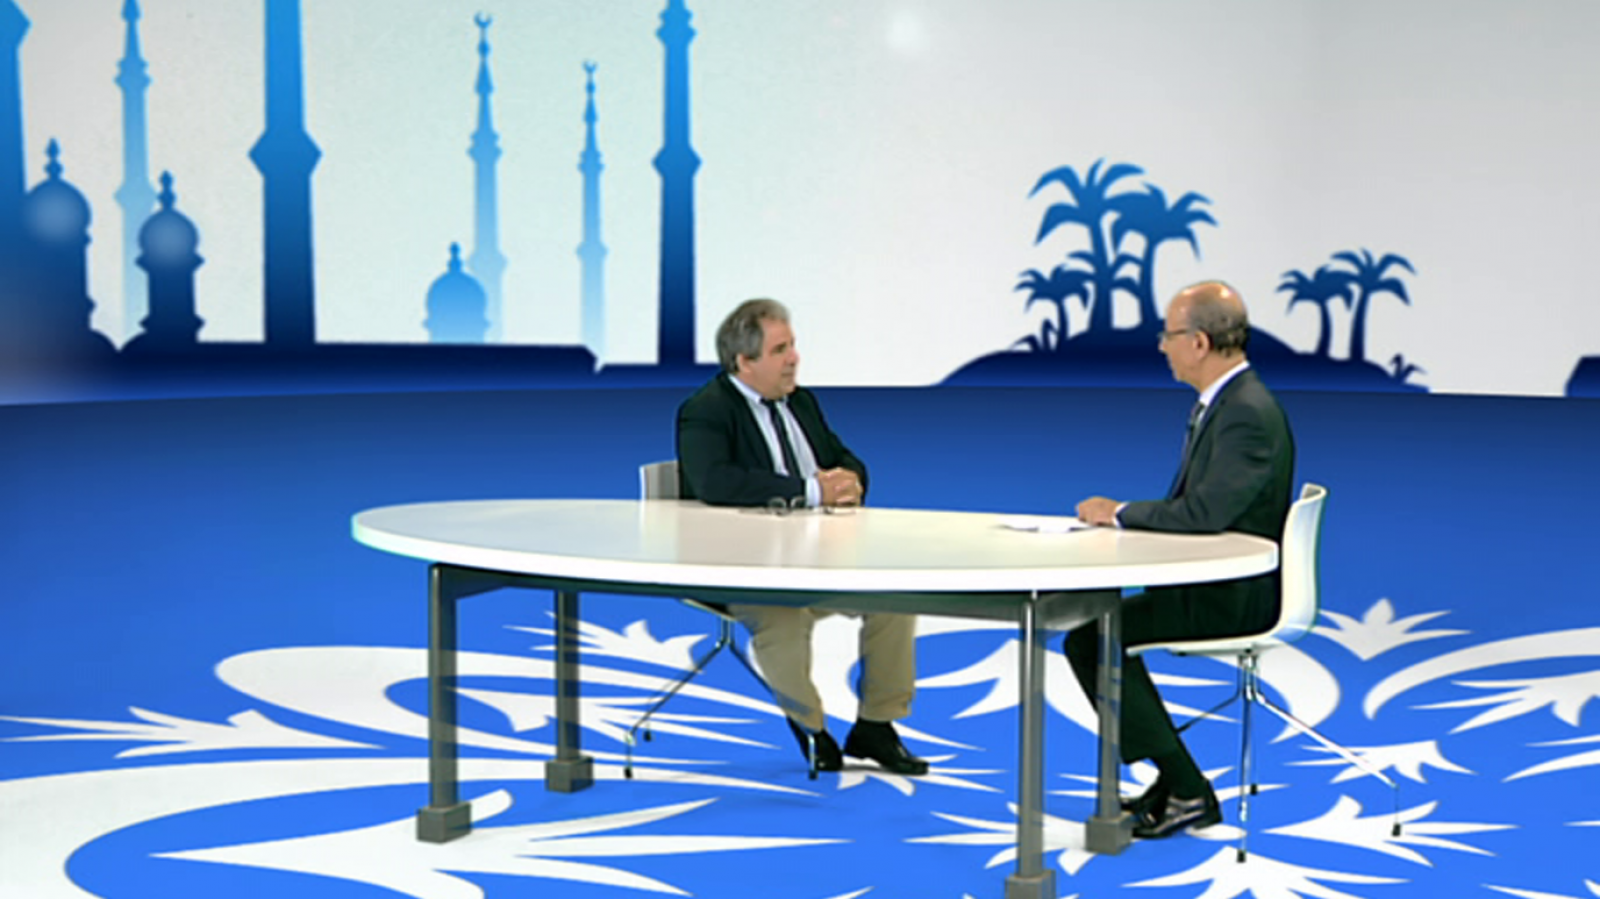 Medina en TVE - El Islam en los medios de comunicación - RTVE.es